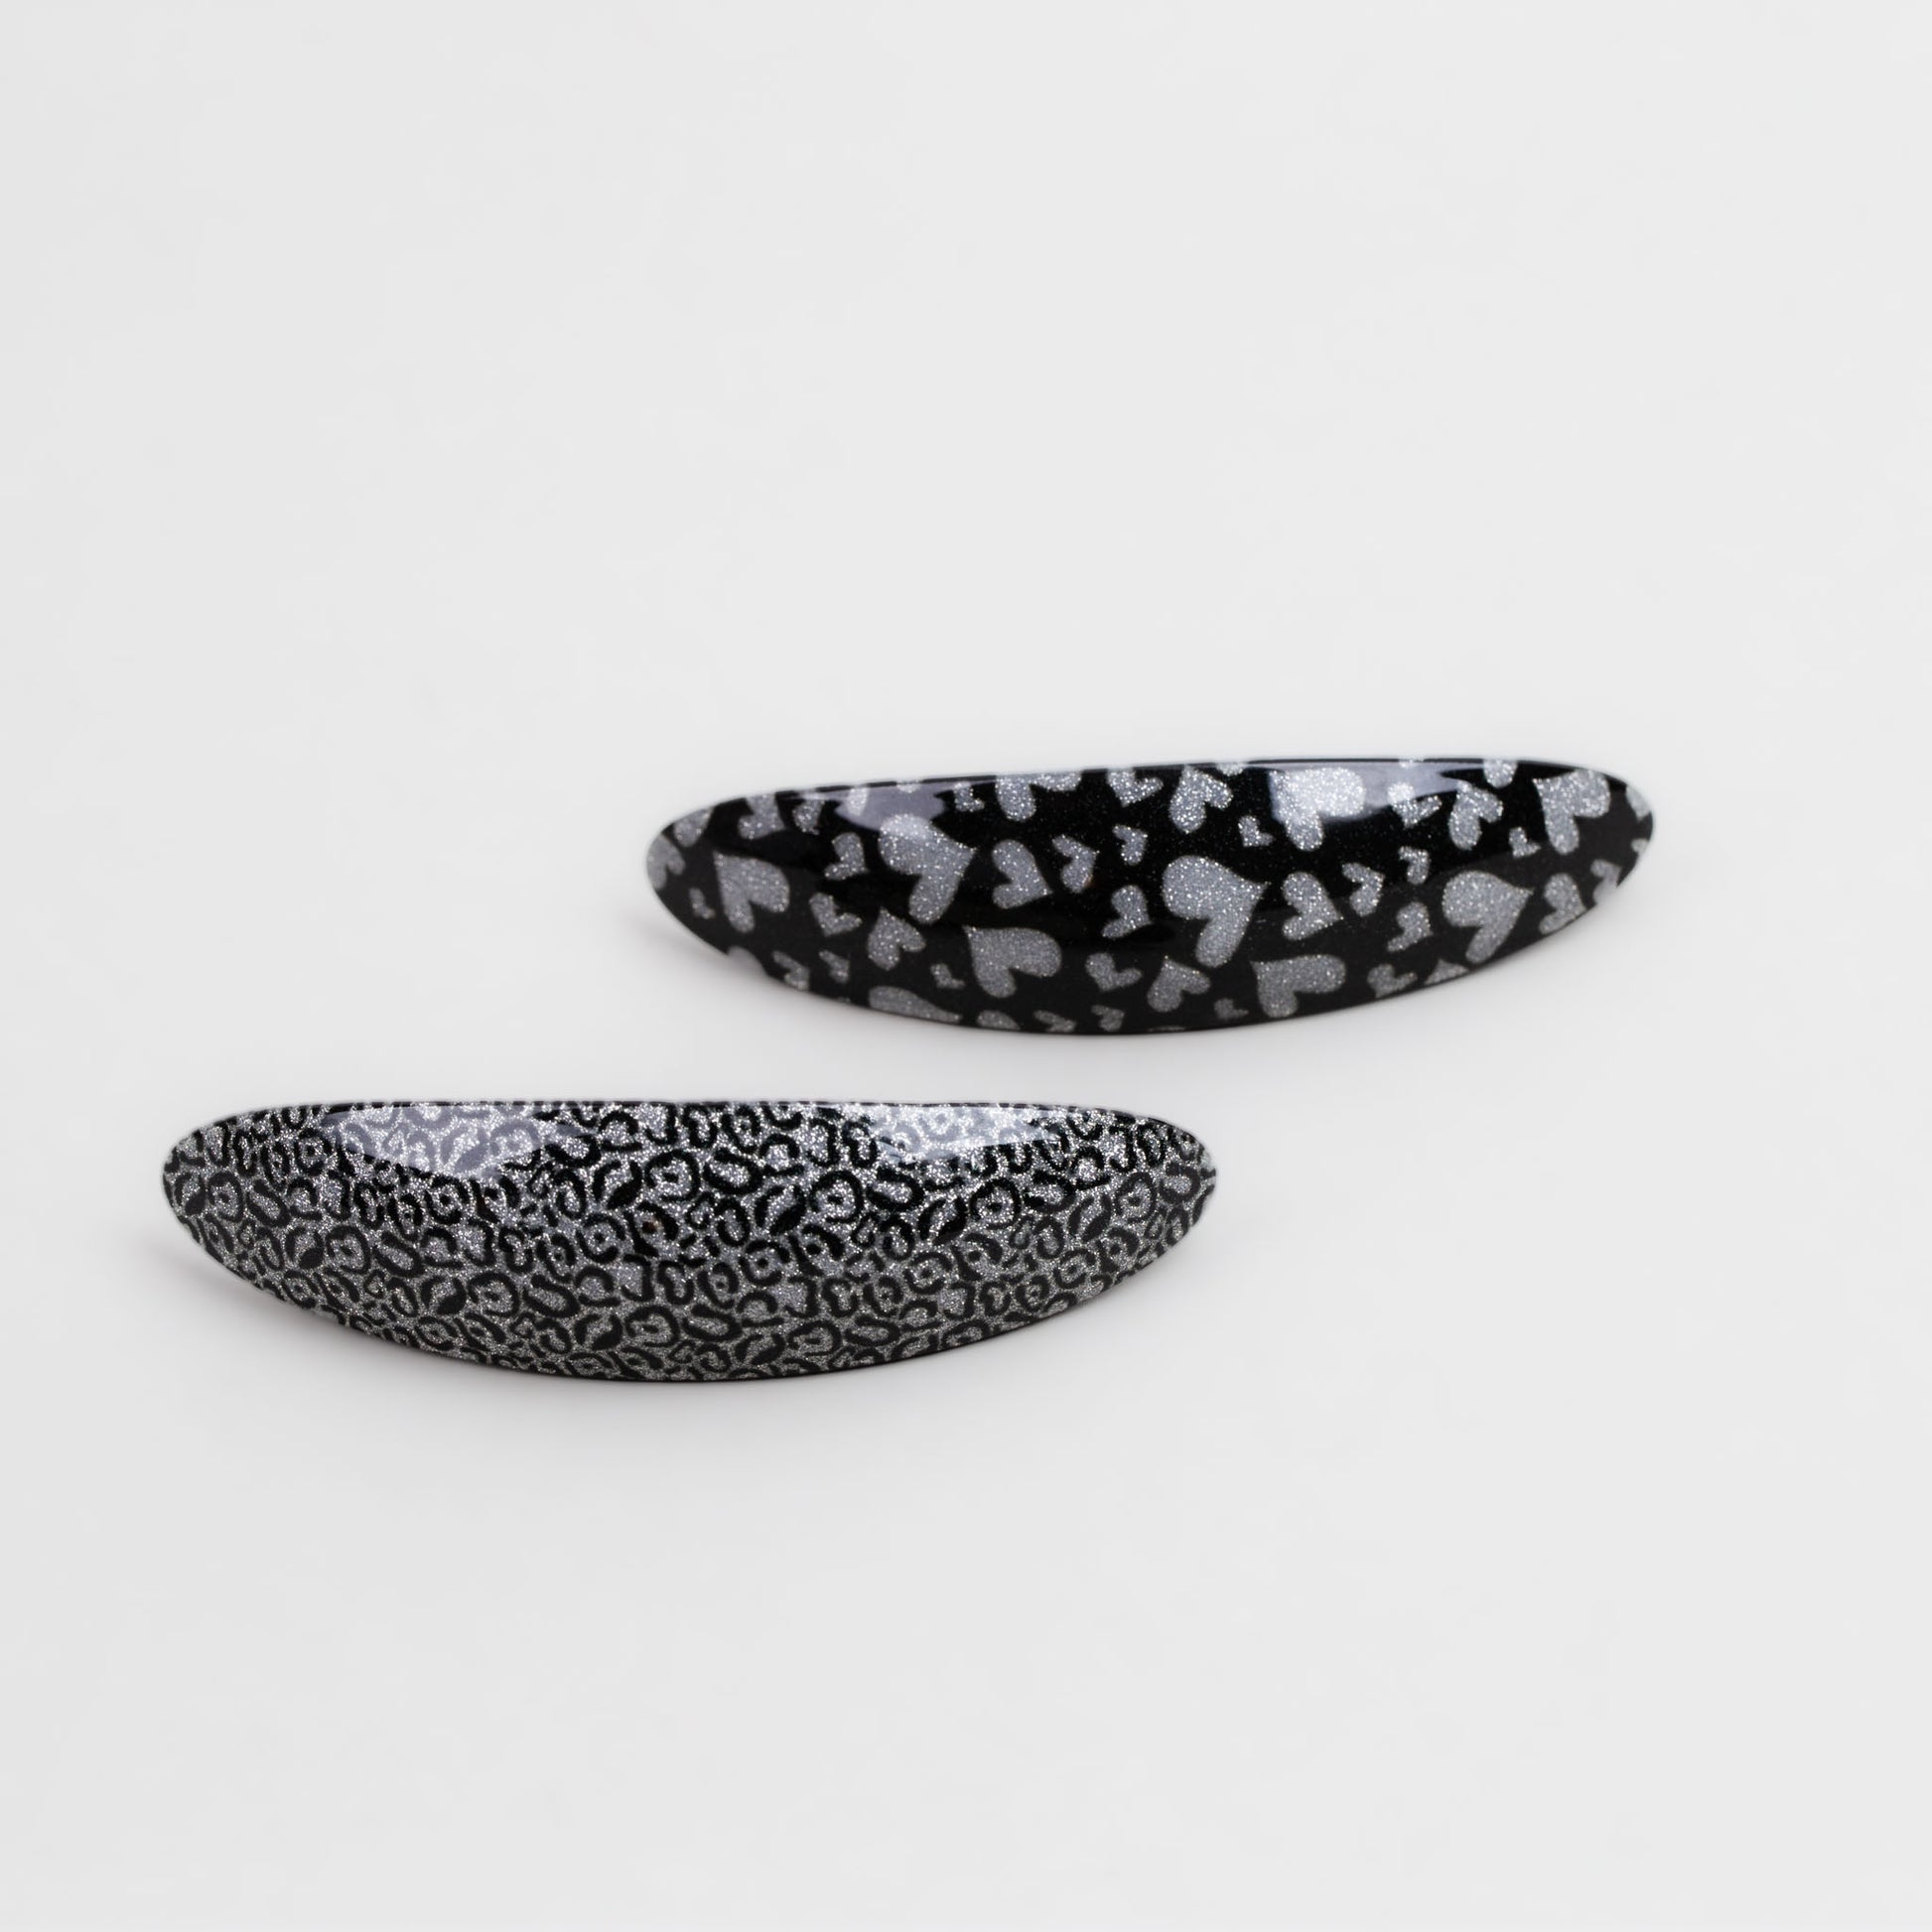 Agrafe franțuzești cu formă eliptică, imprimeu cu inimi și alte forme, textură marmorată sclipitoare, set 2 buc - Negru, Argintiu